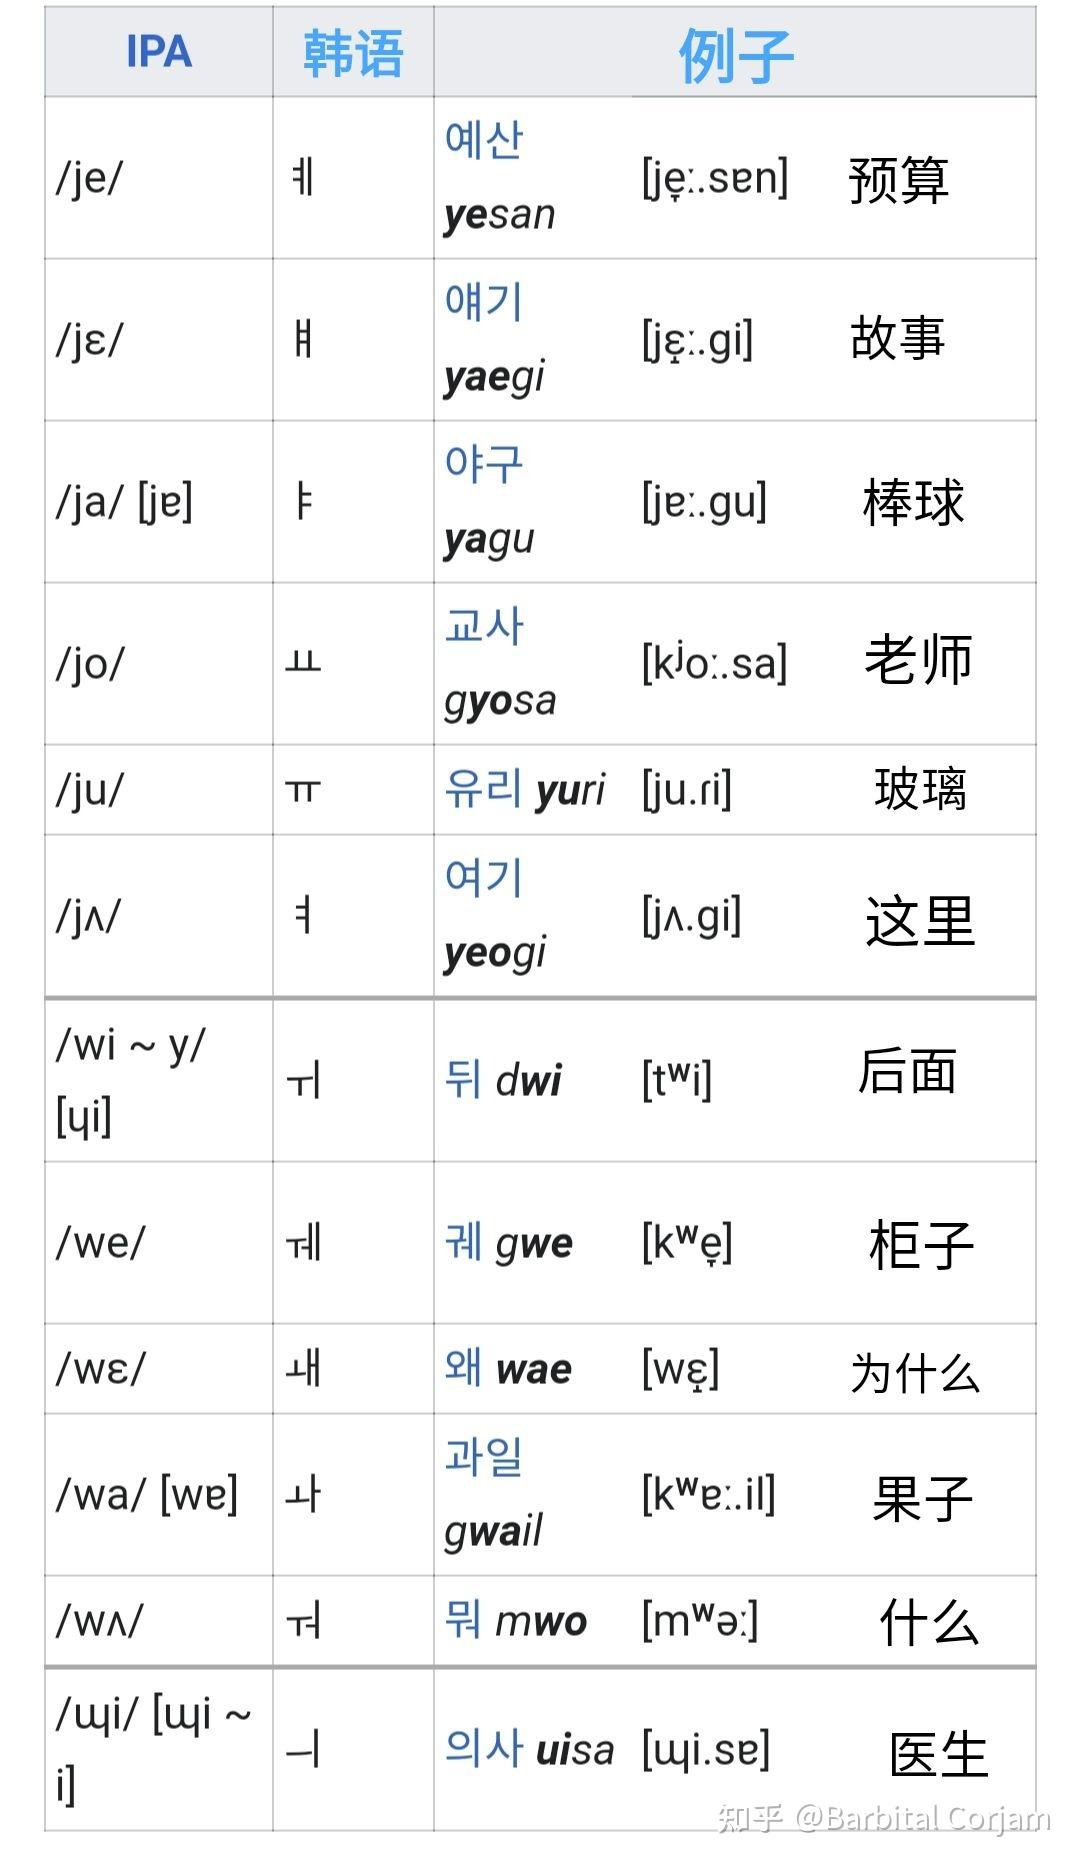 而其他辅音不能,也因为被韩语正字法记录为元音,所以/j/和/w/有时被